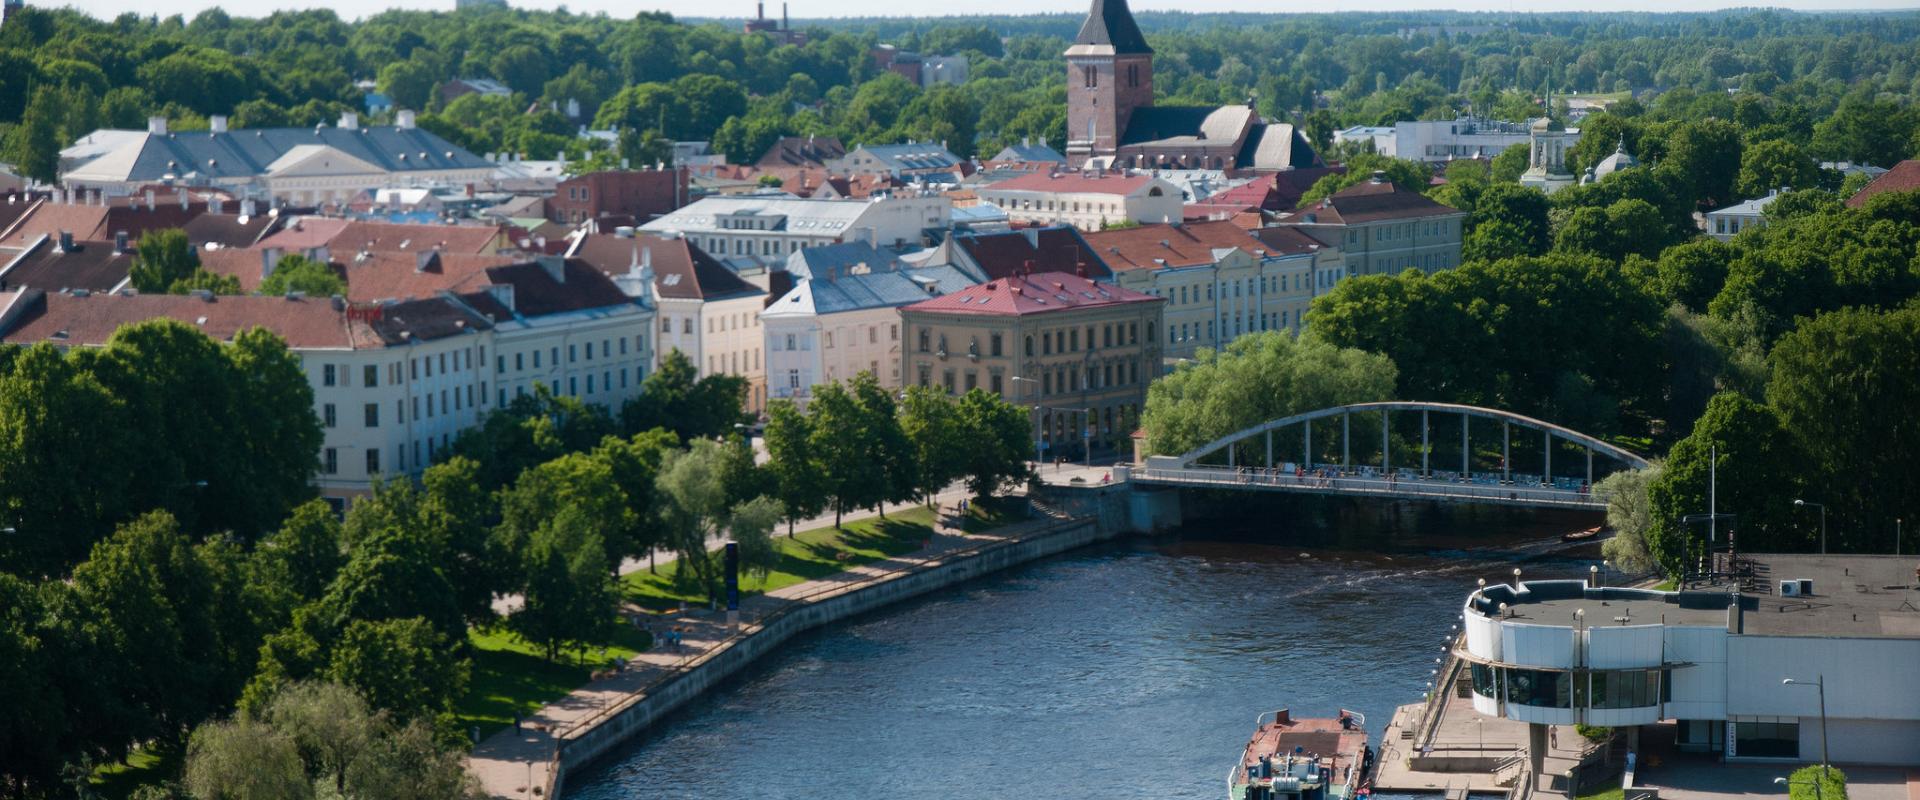 Bogenbrücke und Bootsreisen im sommerlichen Tartu